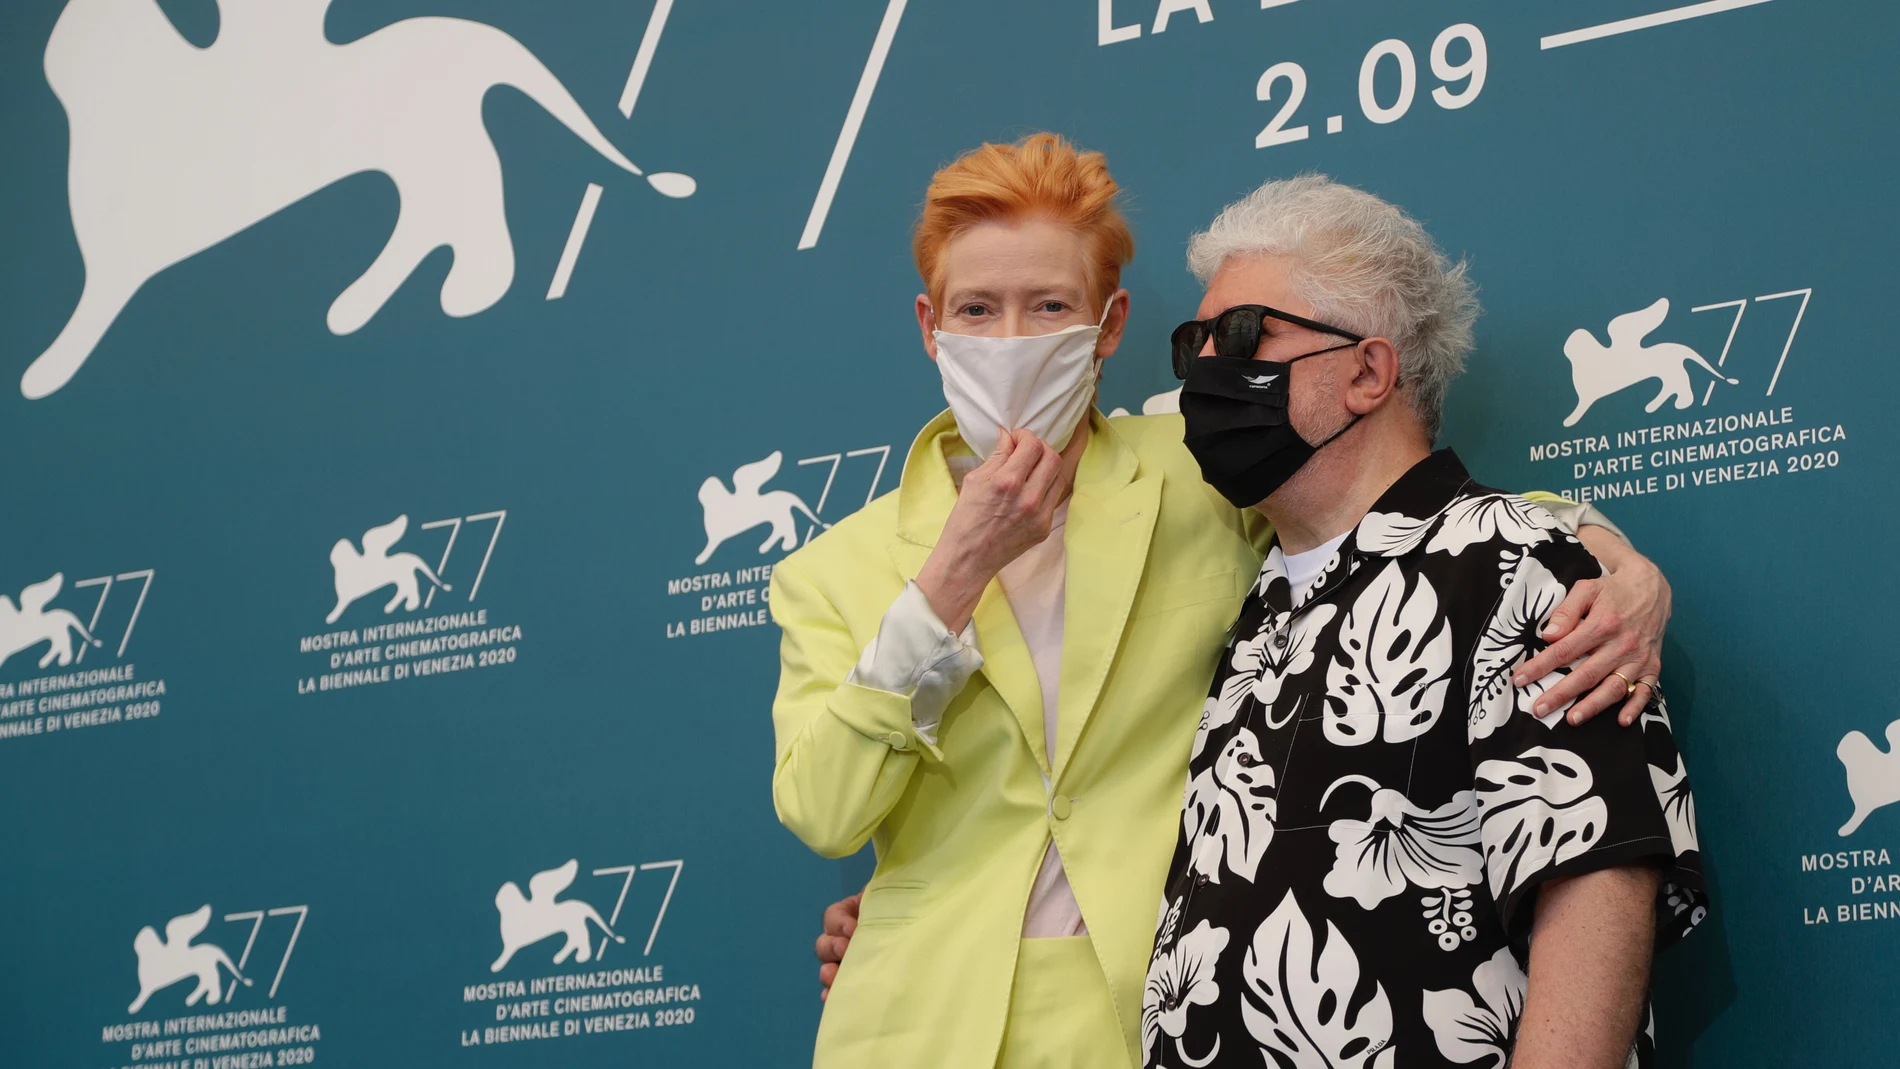 Pedro Almodovar y Tilda Swintonen el Festival de Venecia, donde han presentado "La voz humana"